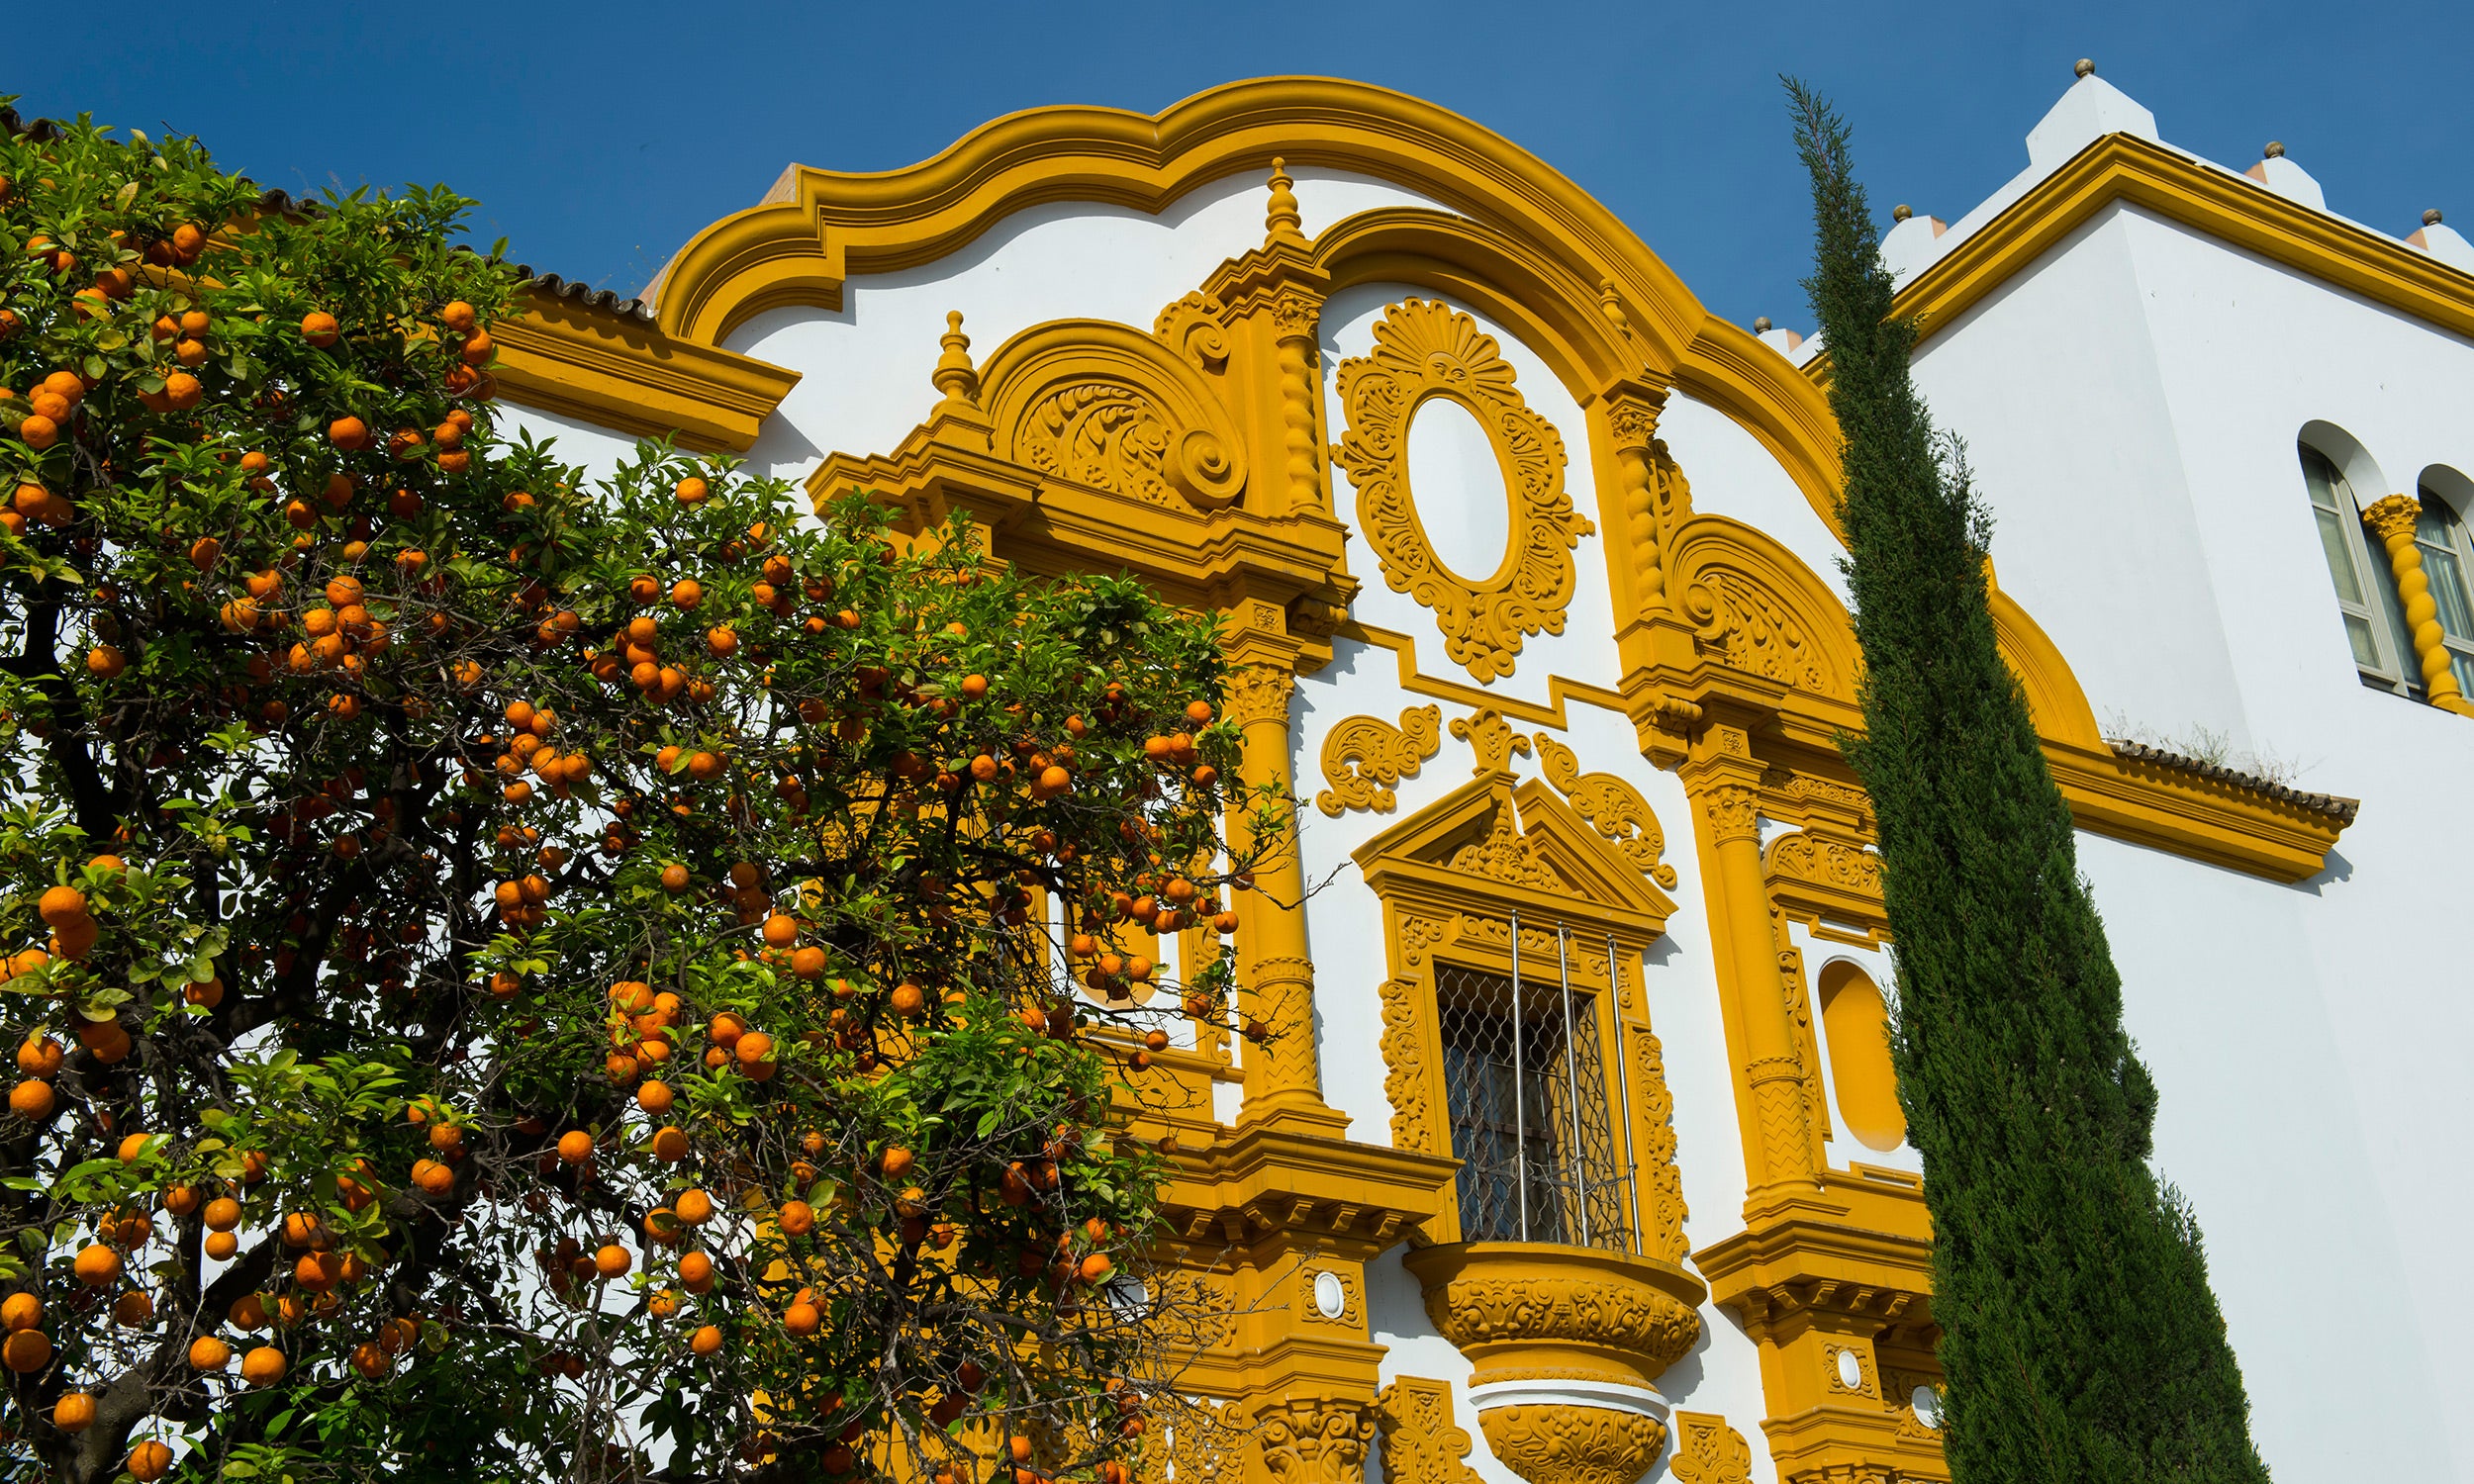 Seville orange blossom trees.